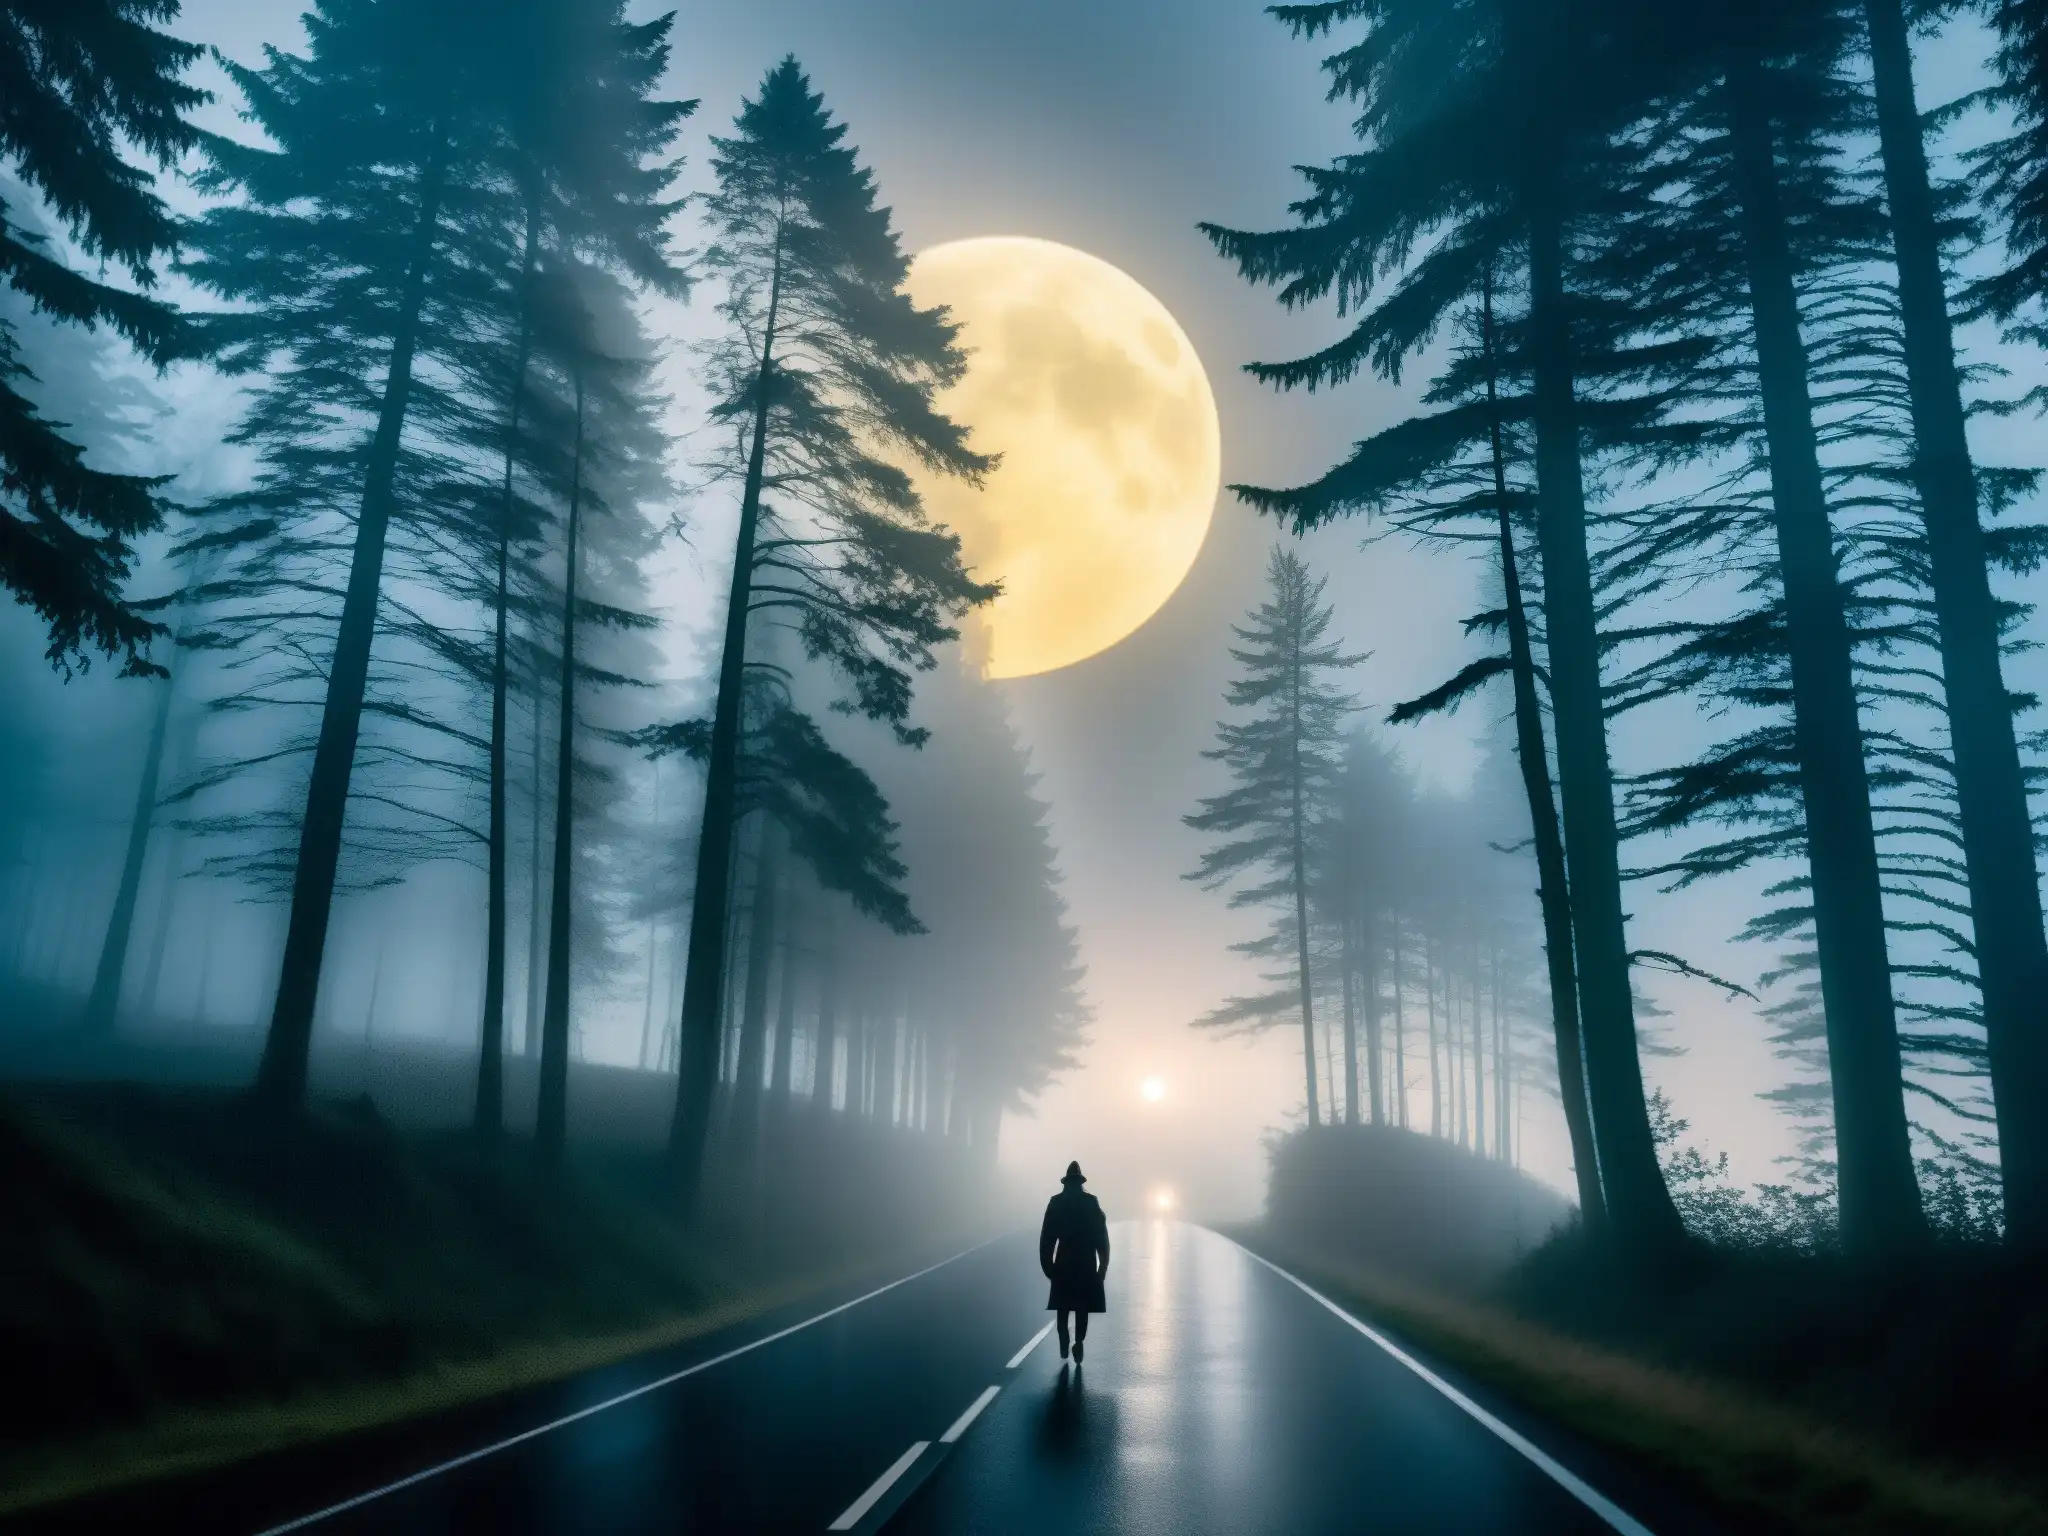 Un camino oscuro se adentra en un bosque tenebroso, iluminado por la luz de la luna